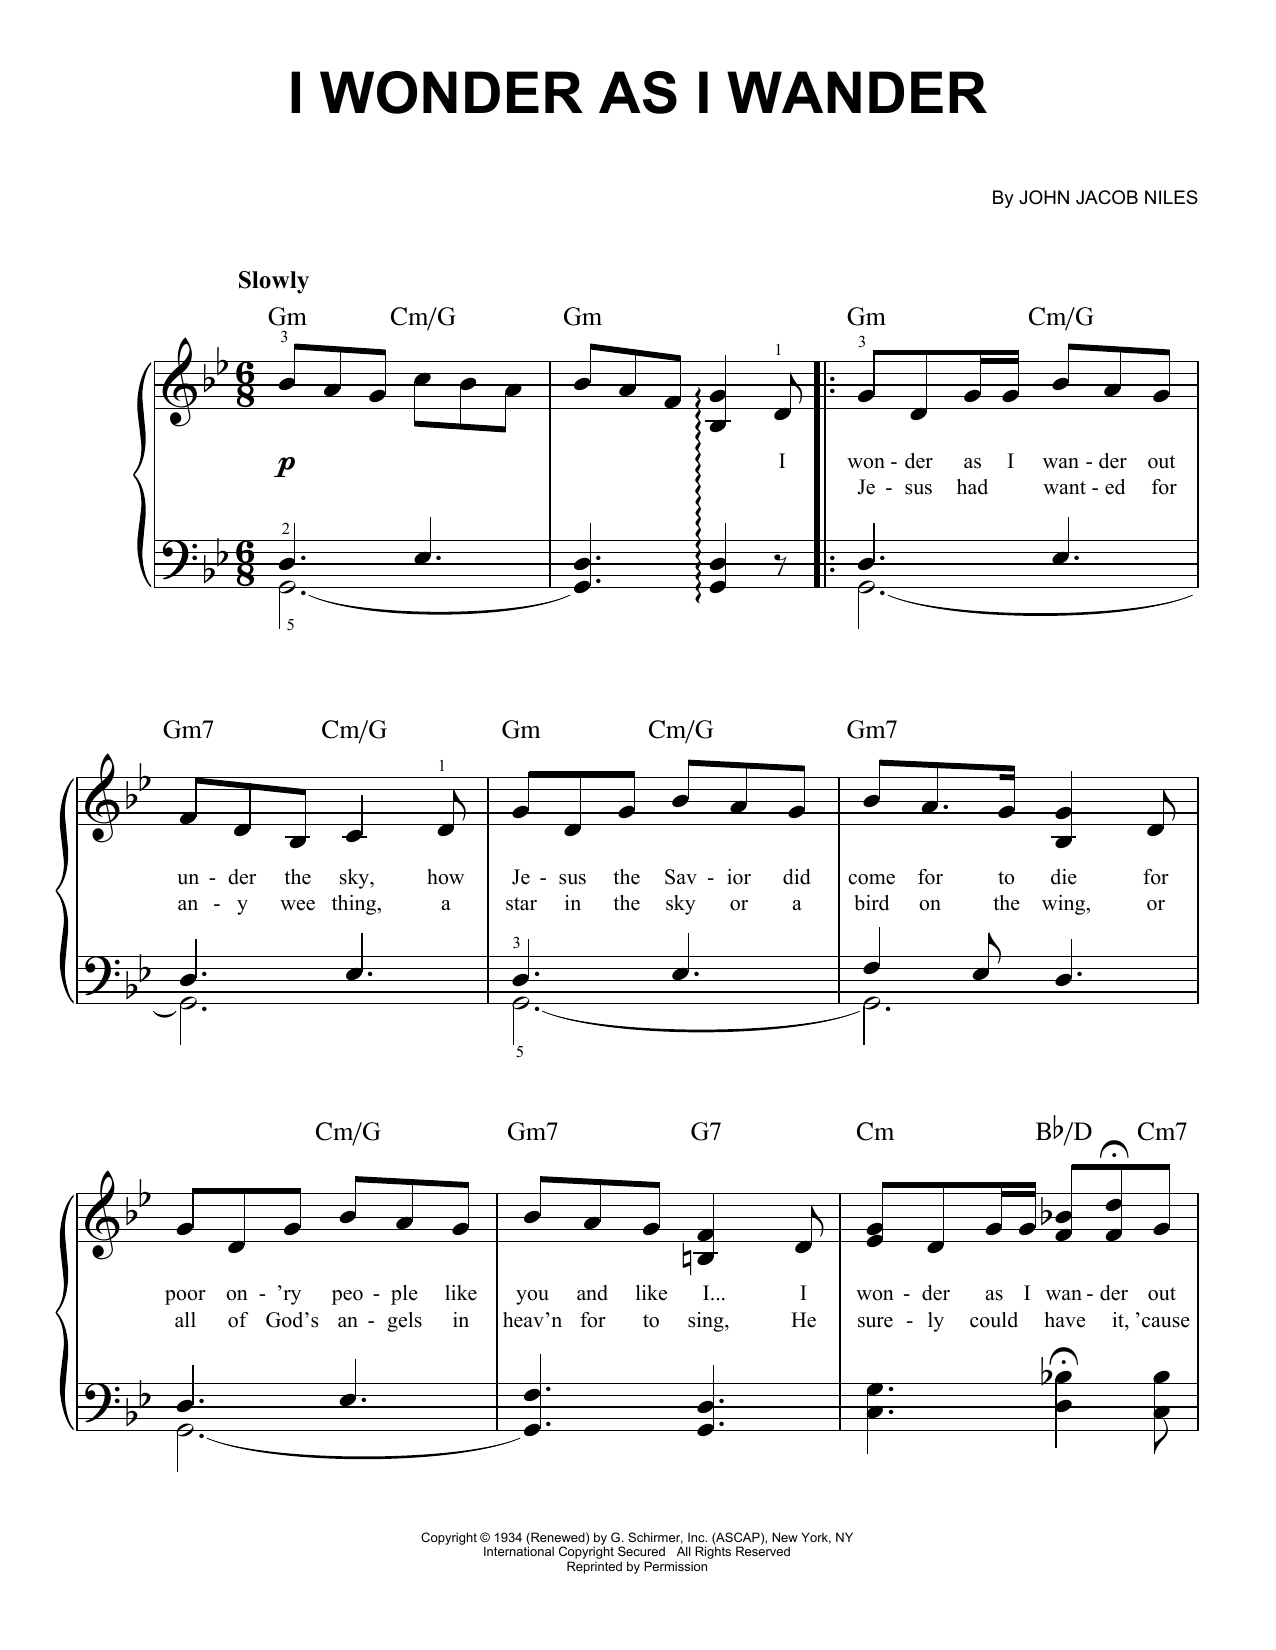 John Jacob Niles I Wonder As I Wander Sheet Music Notes & Chords for Violin and Piano - Download or Print PDF